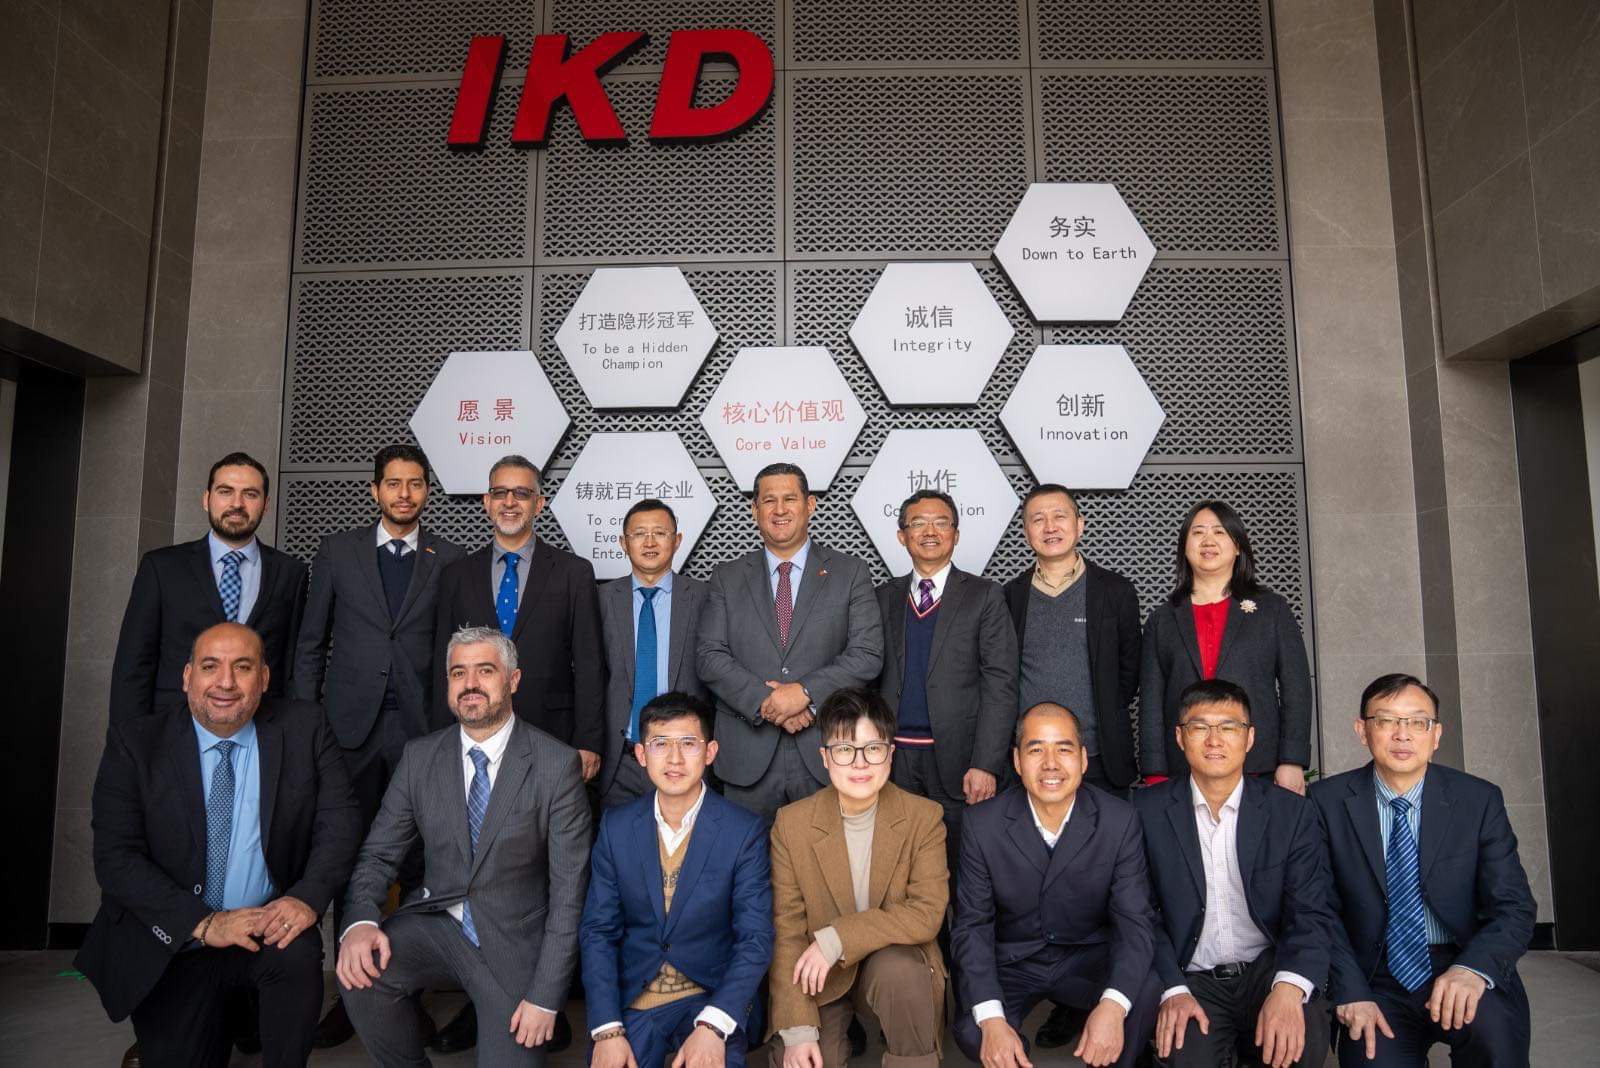 IKD anuncia nueva inversión en Guanajuato